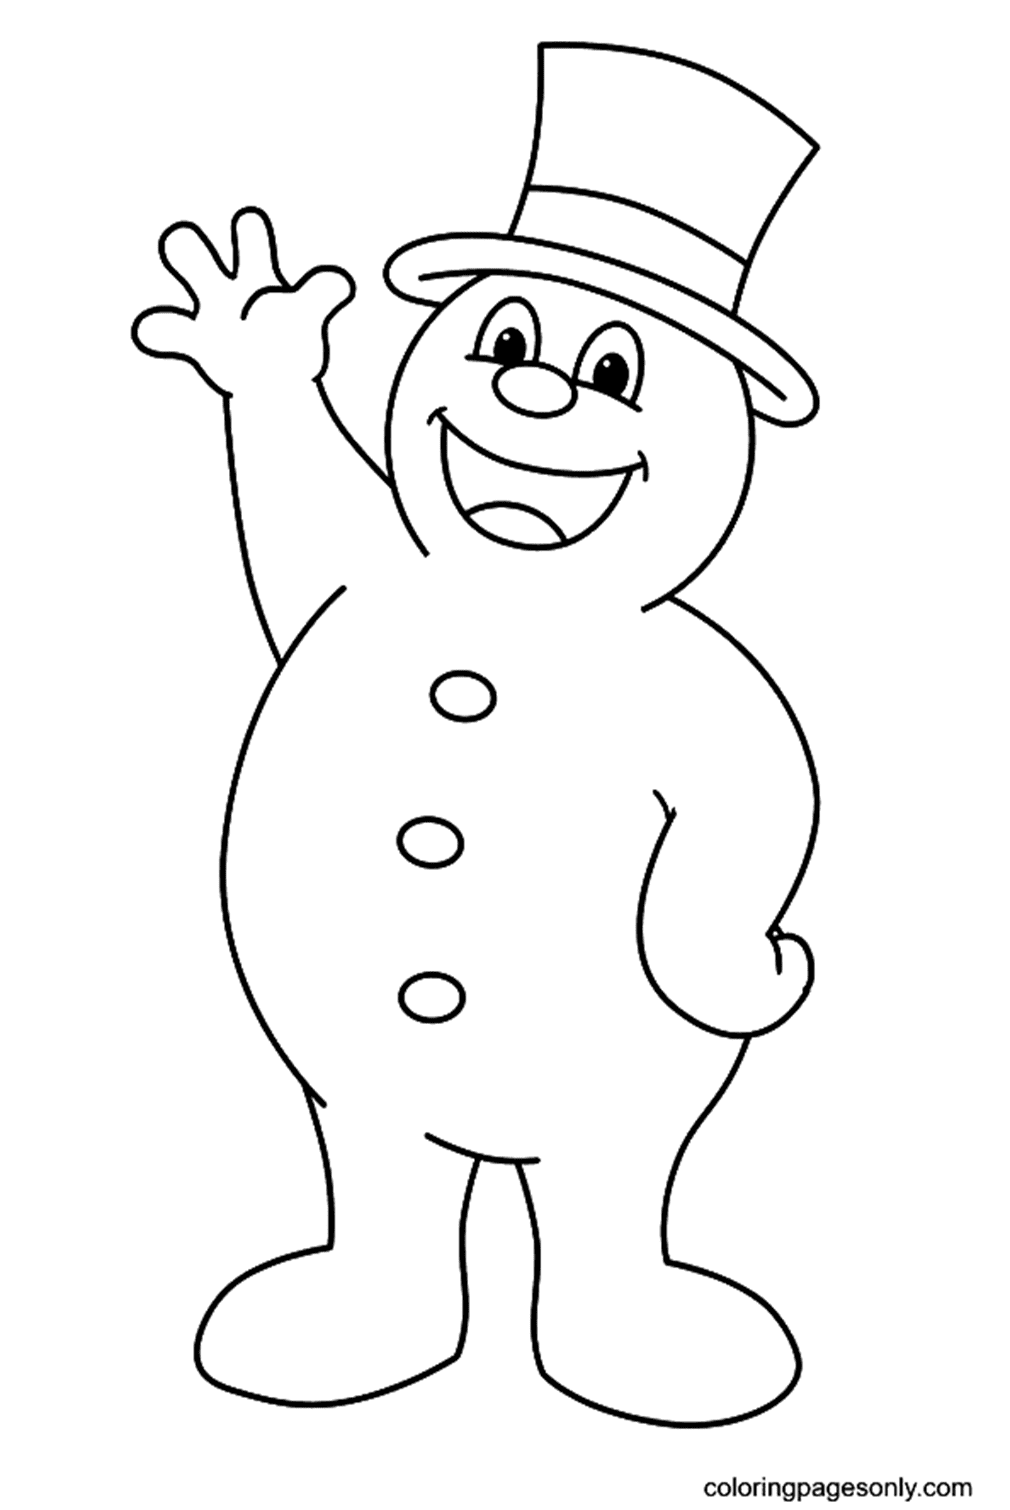 Frosty il pupazzo di neve che saluta from Pupazzo di neve